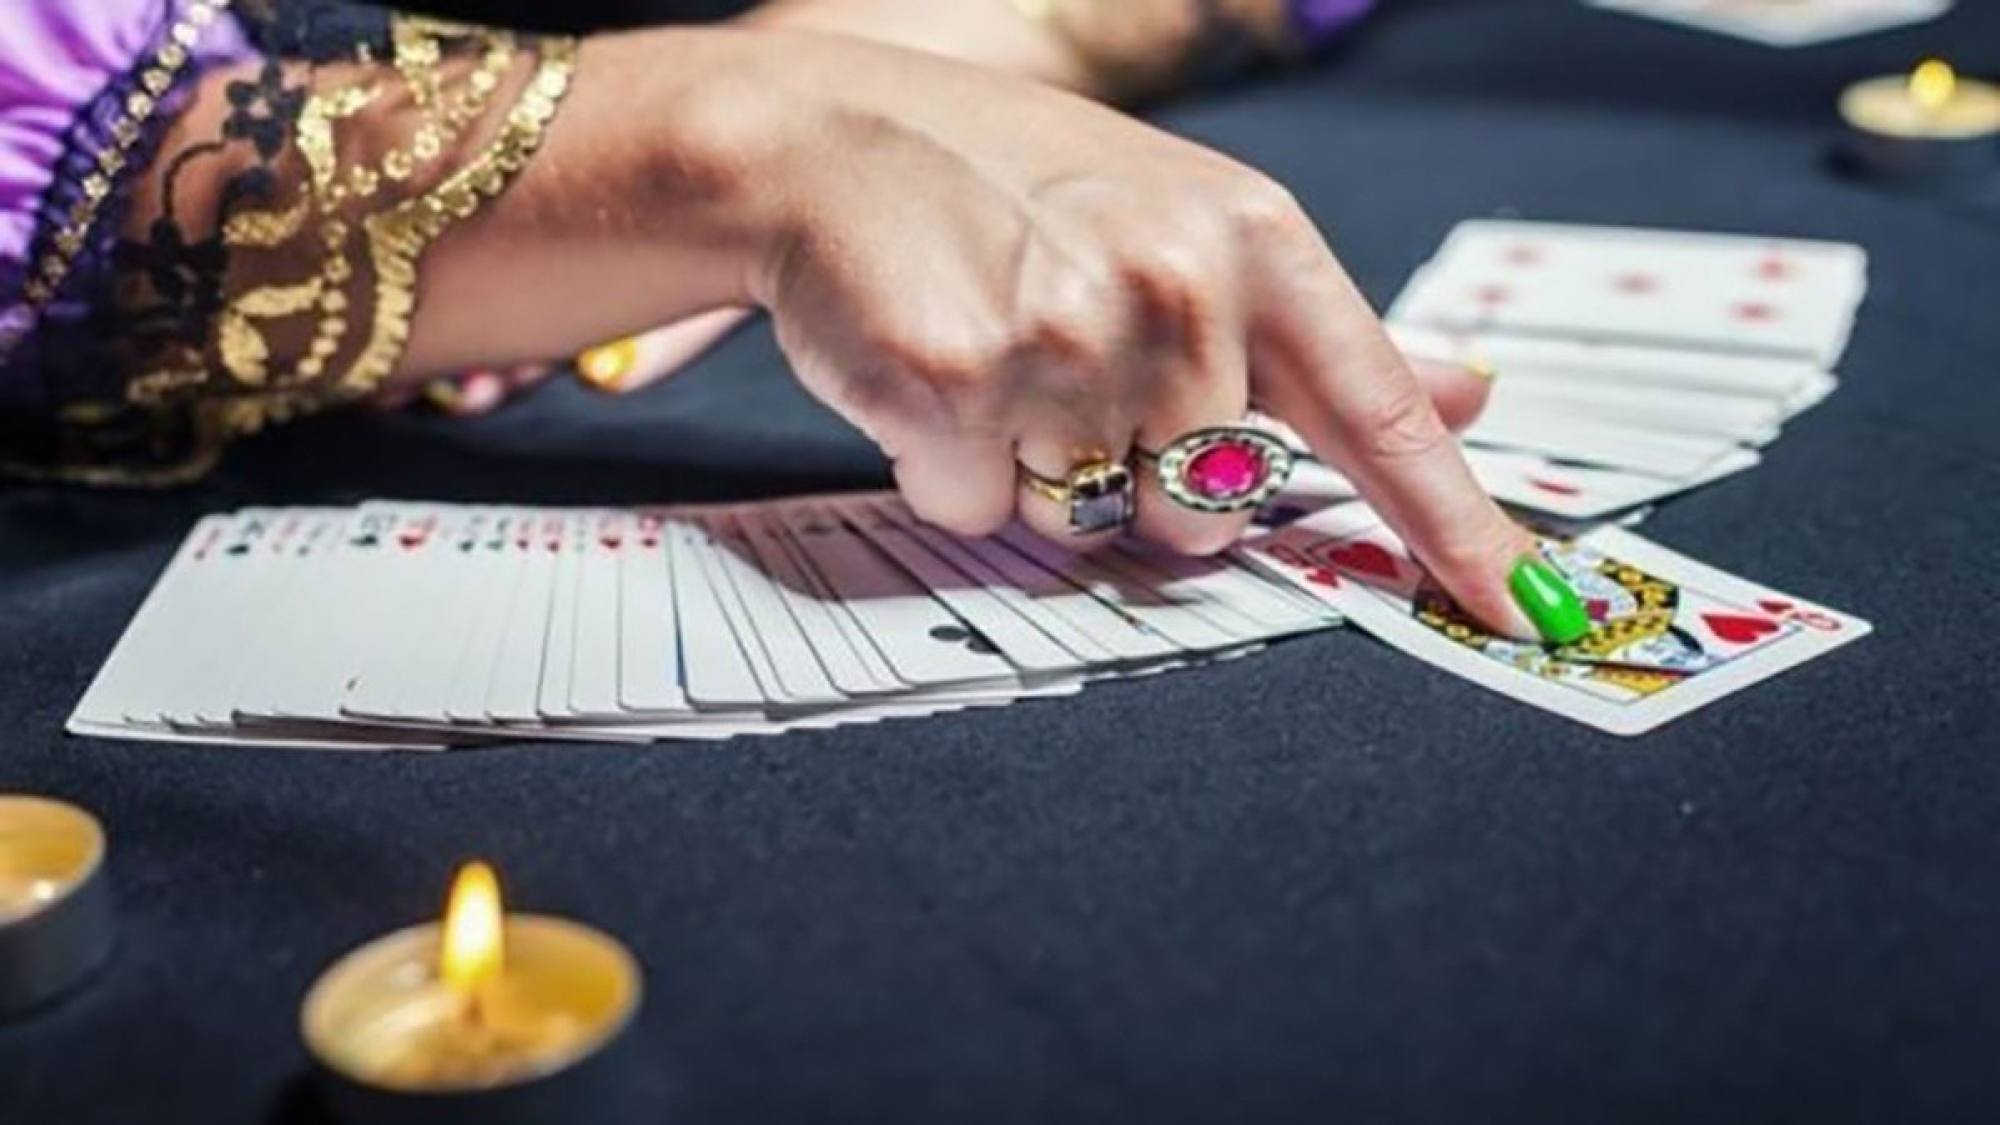 Predicciones astrológicas y juegos de casino